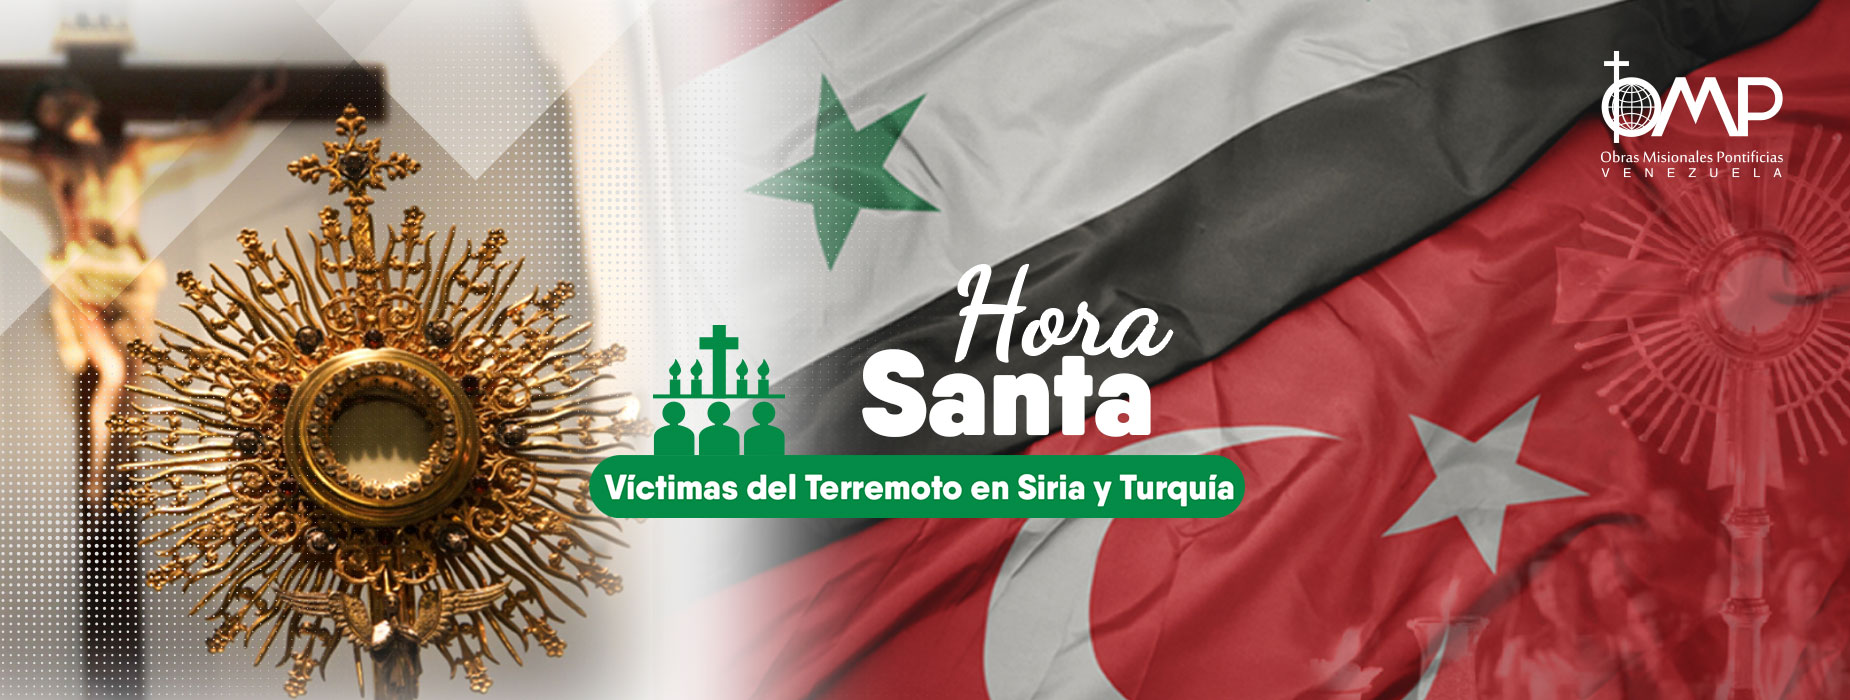 Hora Santa - Víctimas del Terremoto en Siria y Turquía